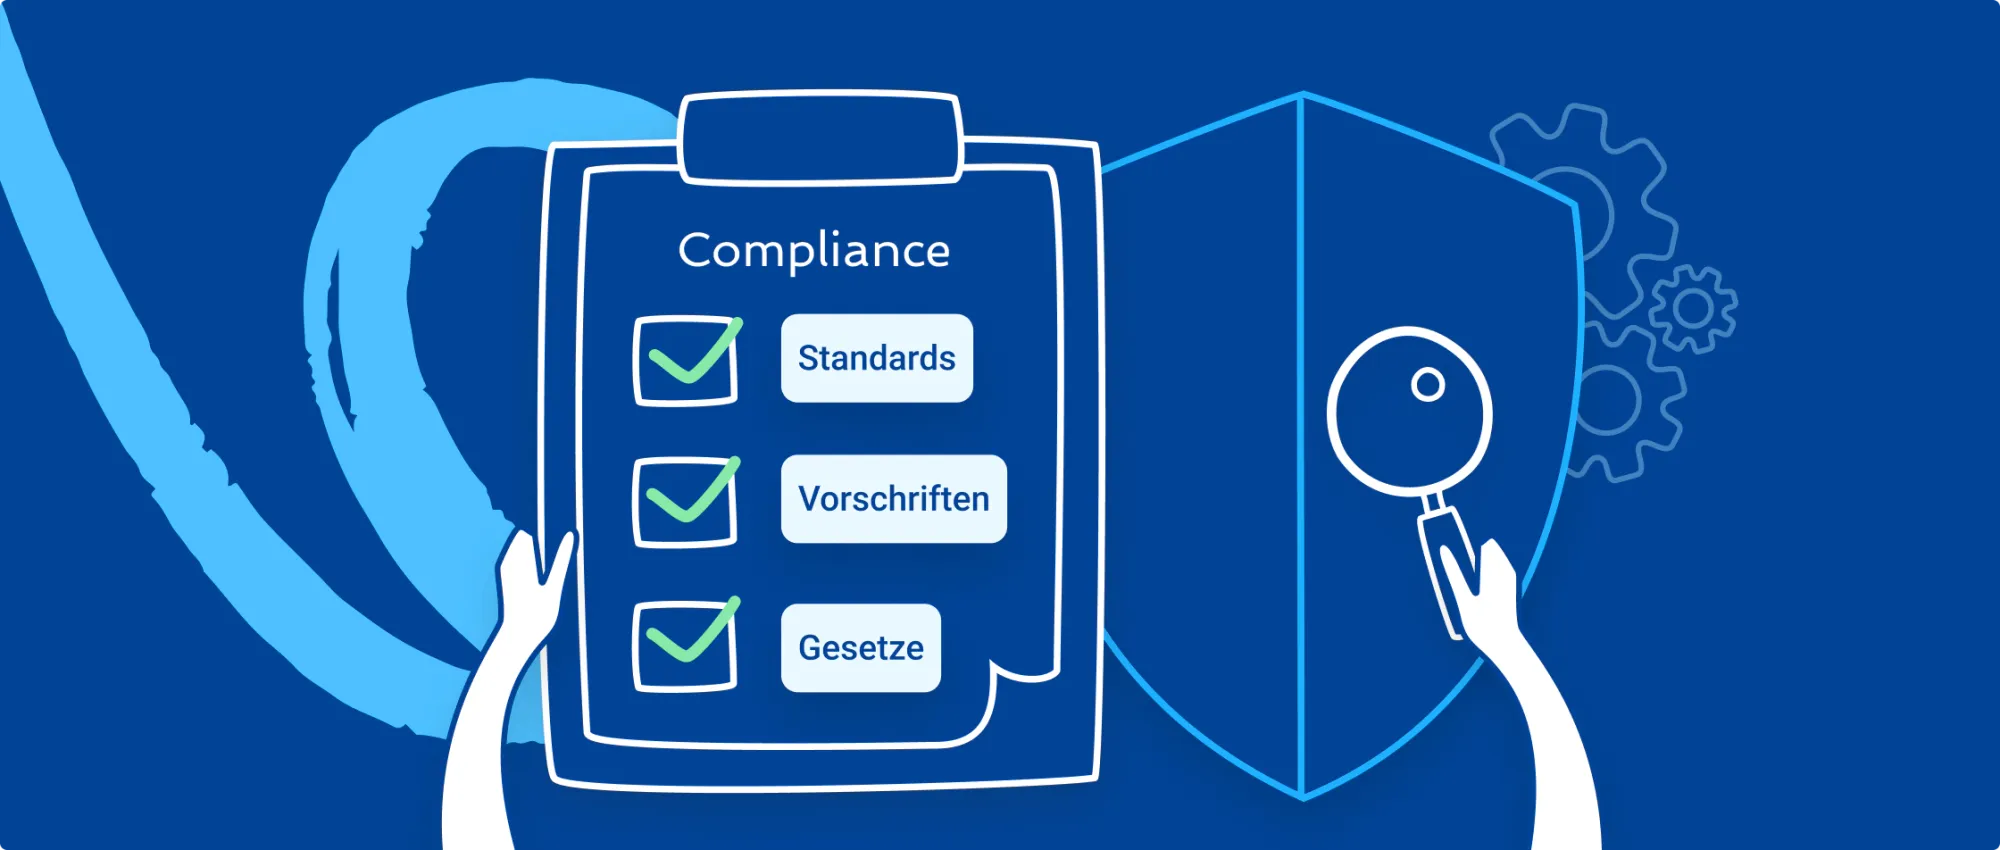 Wie funktioniert Compliance im Mittelstand? Tipps zum Compliance Management für KMU